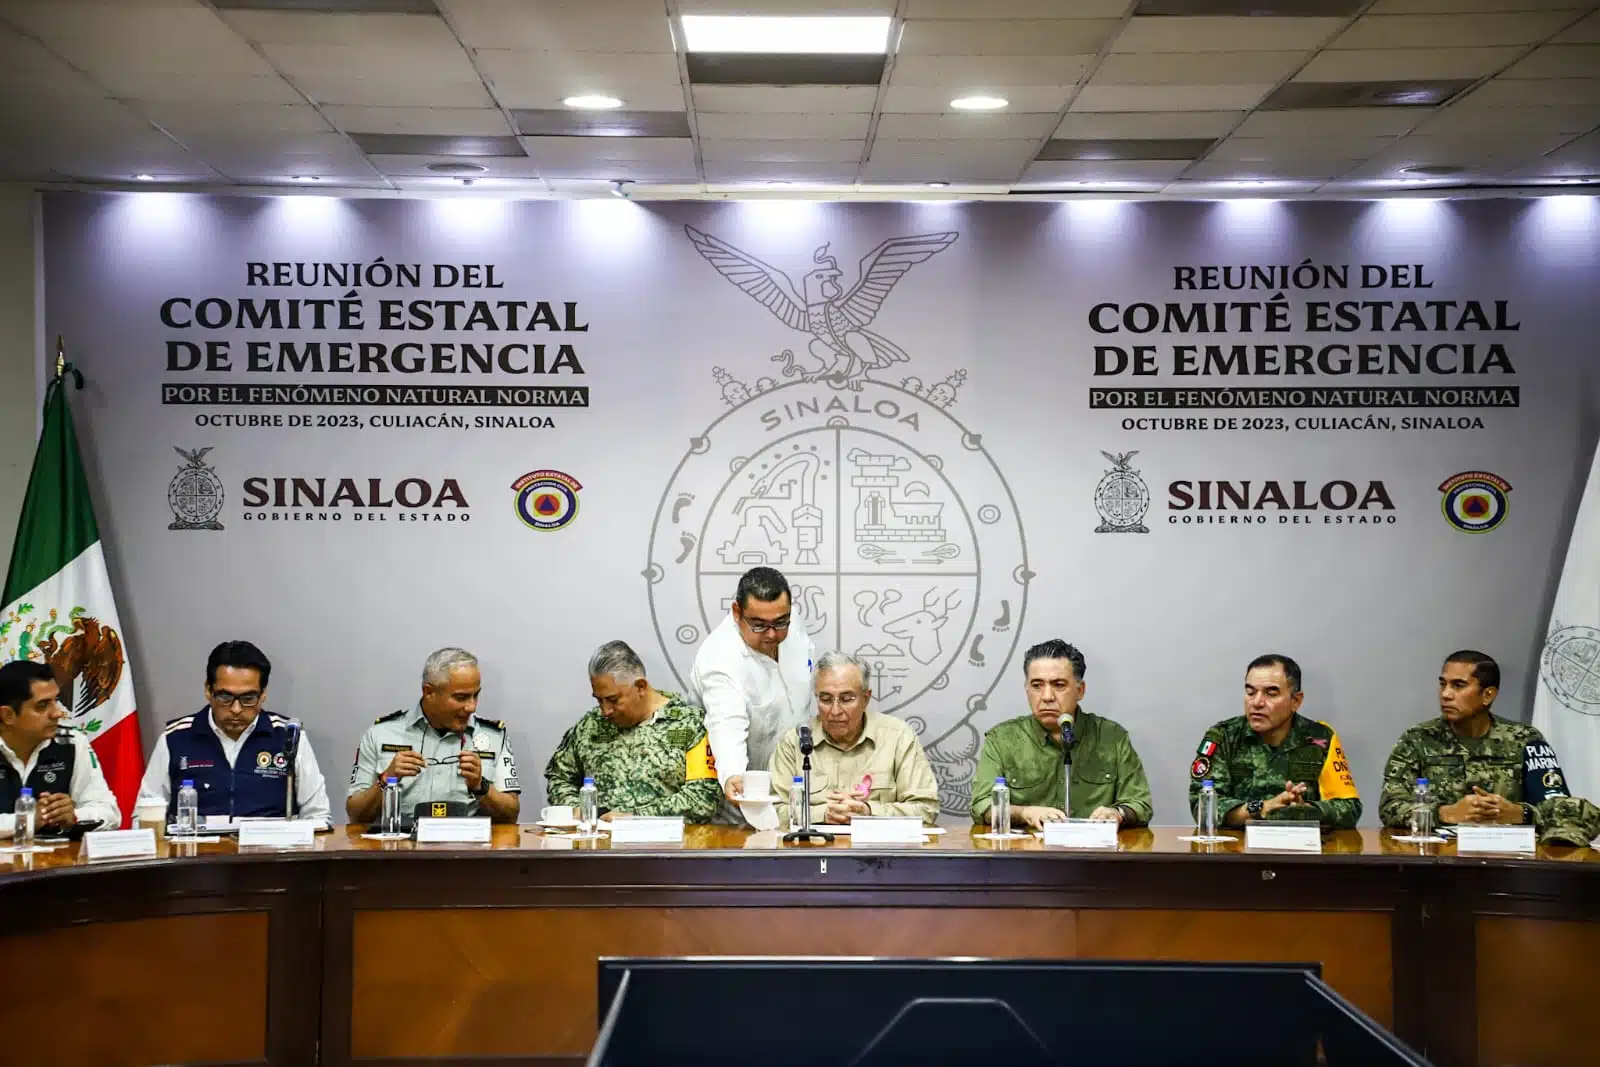 Reunión del Comité Estatal de Emergencia